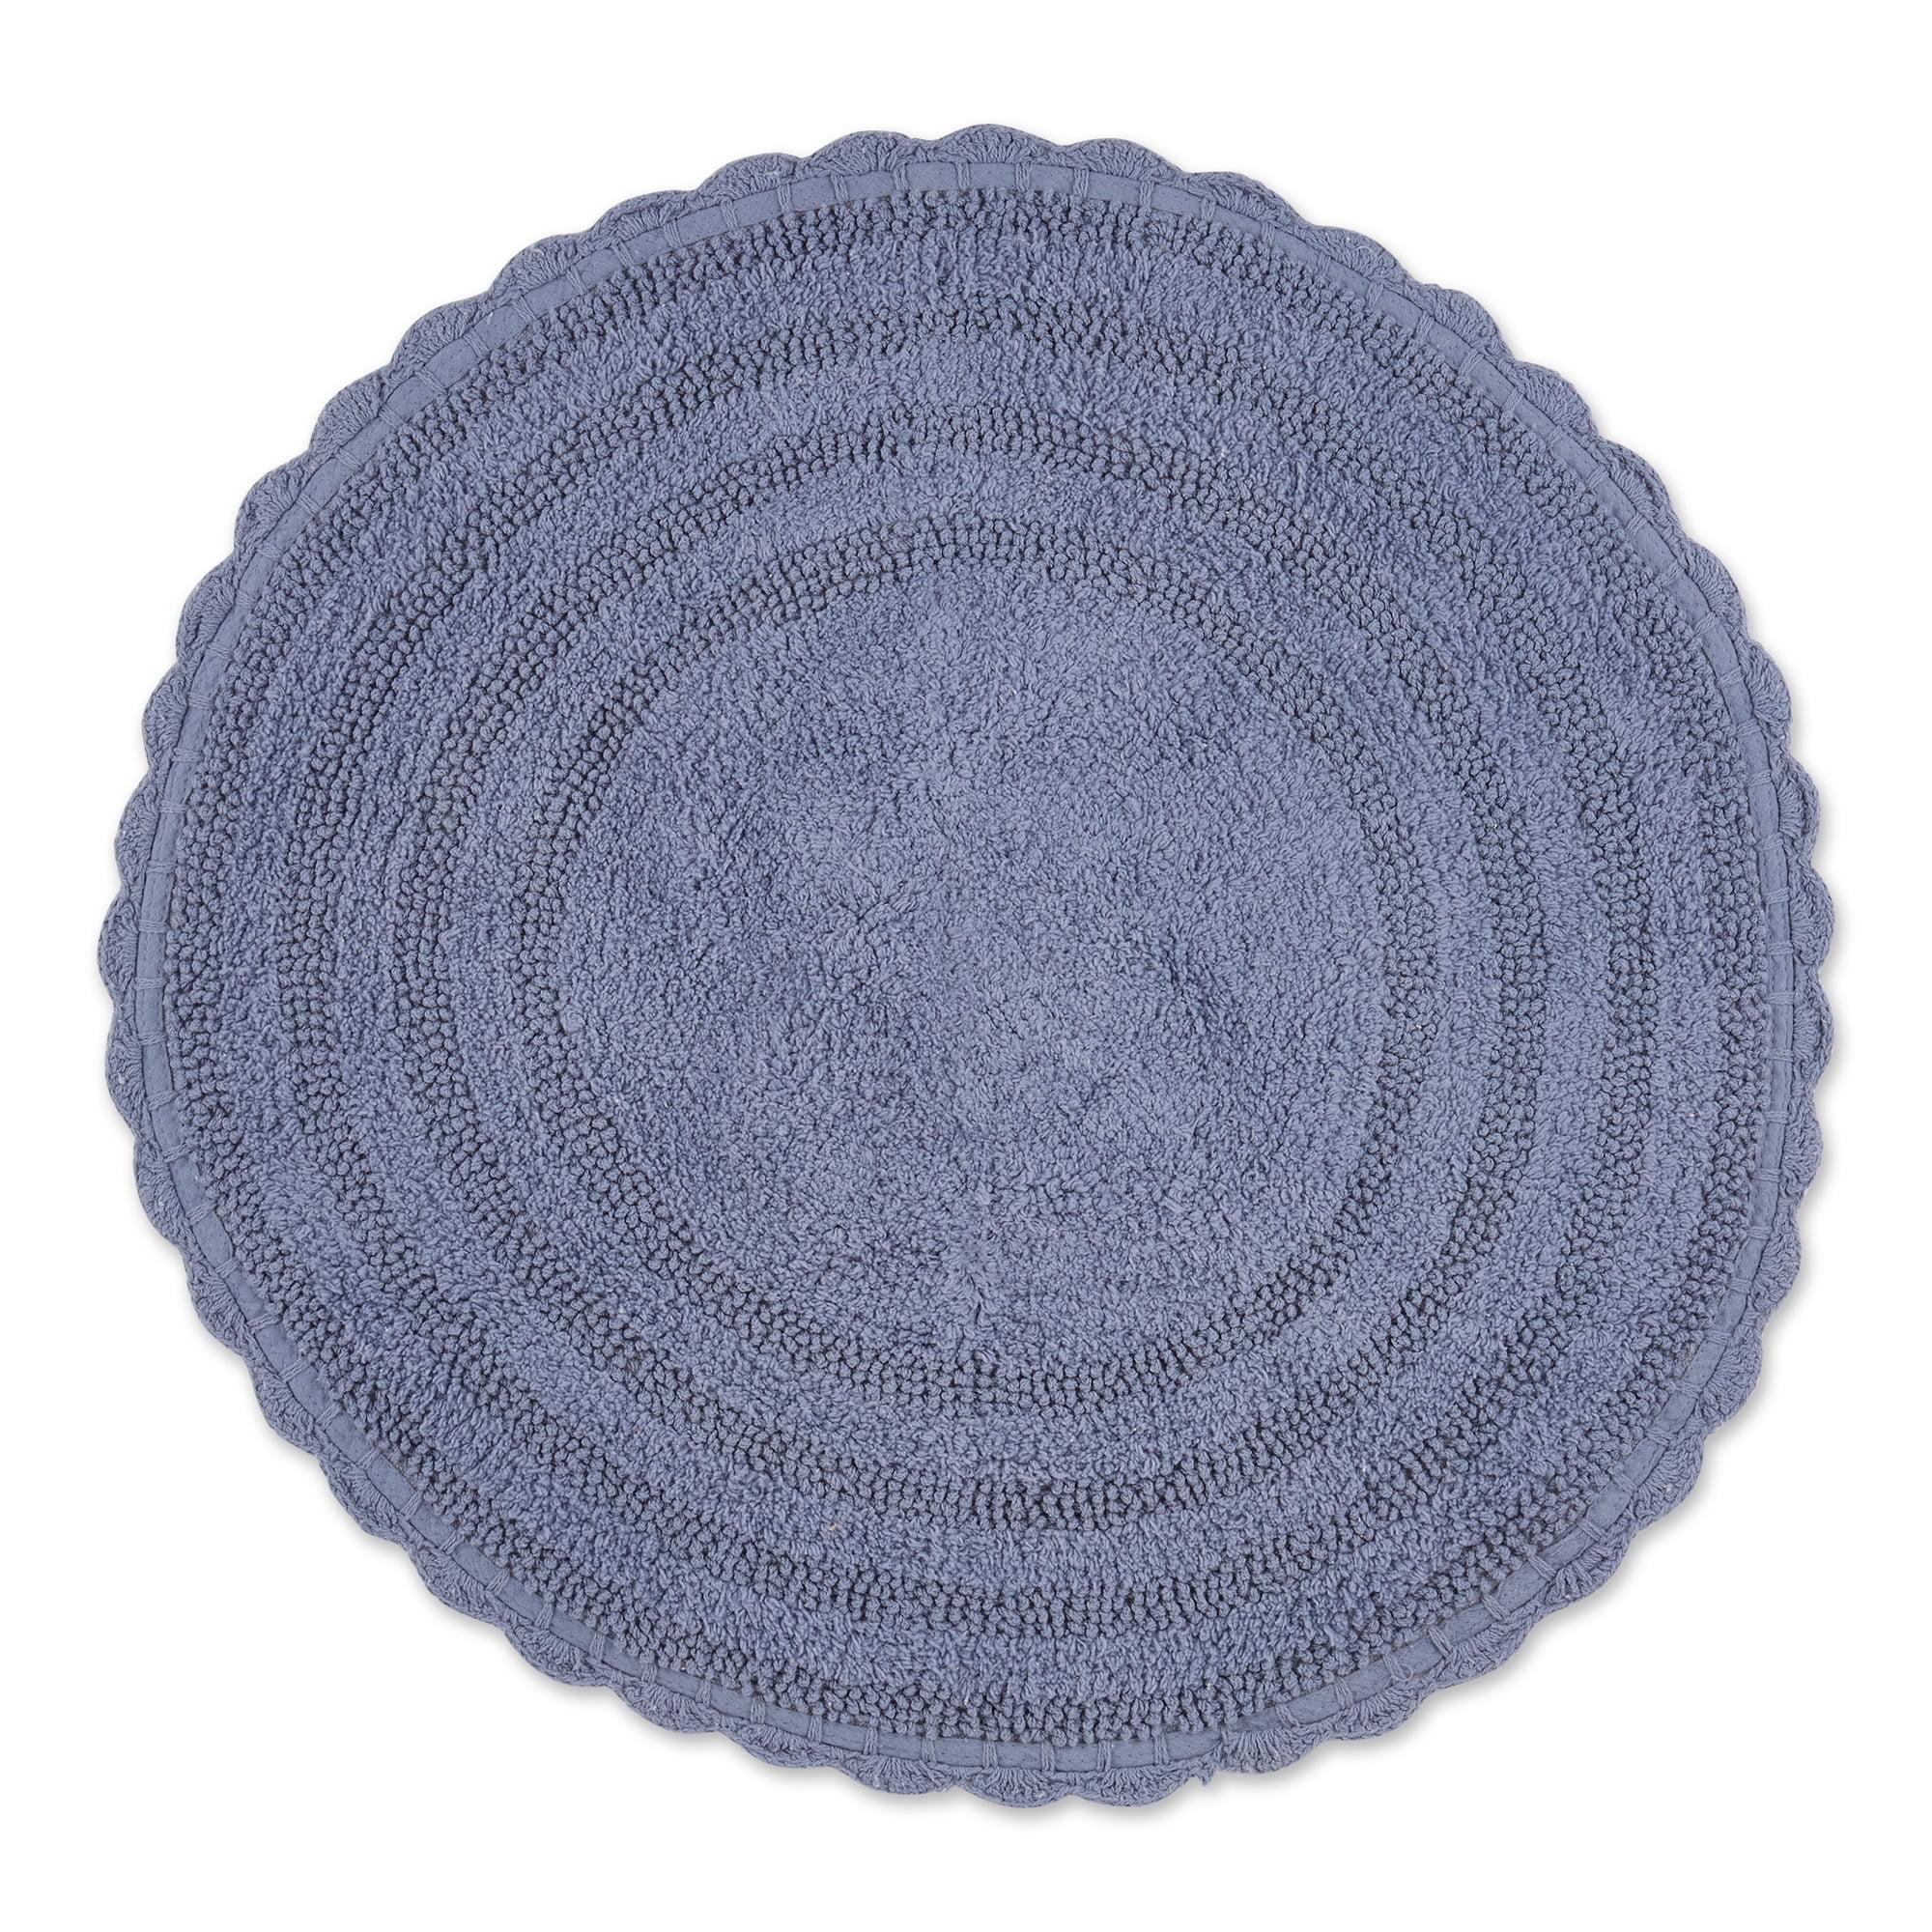 Stonewash Blue Crochet Cotton Round Bath Rug 27.5"